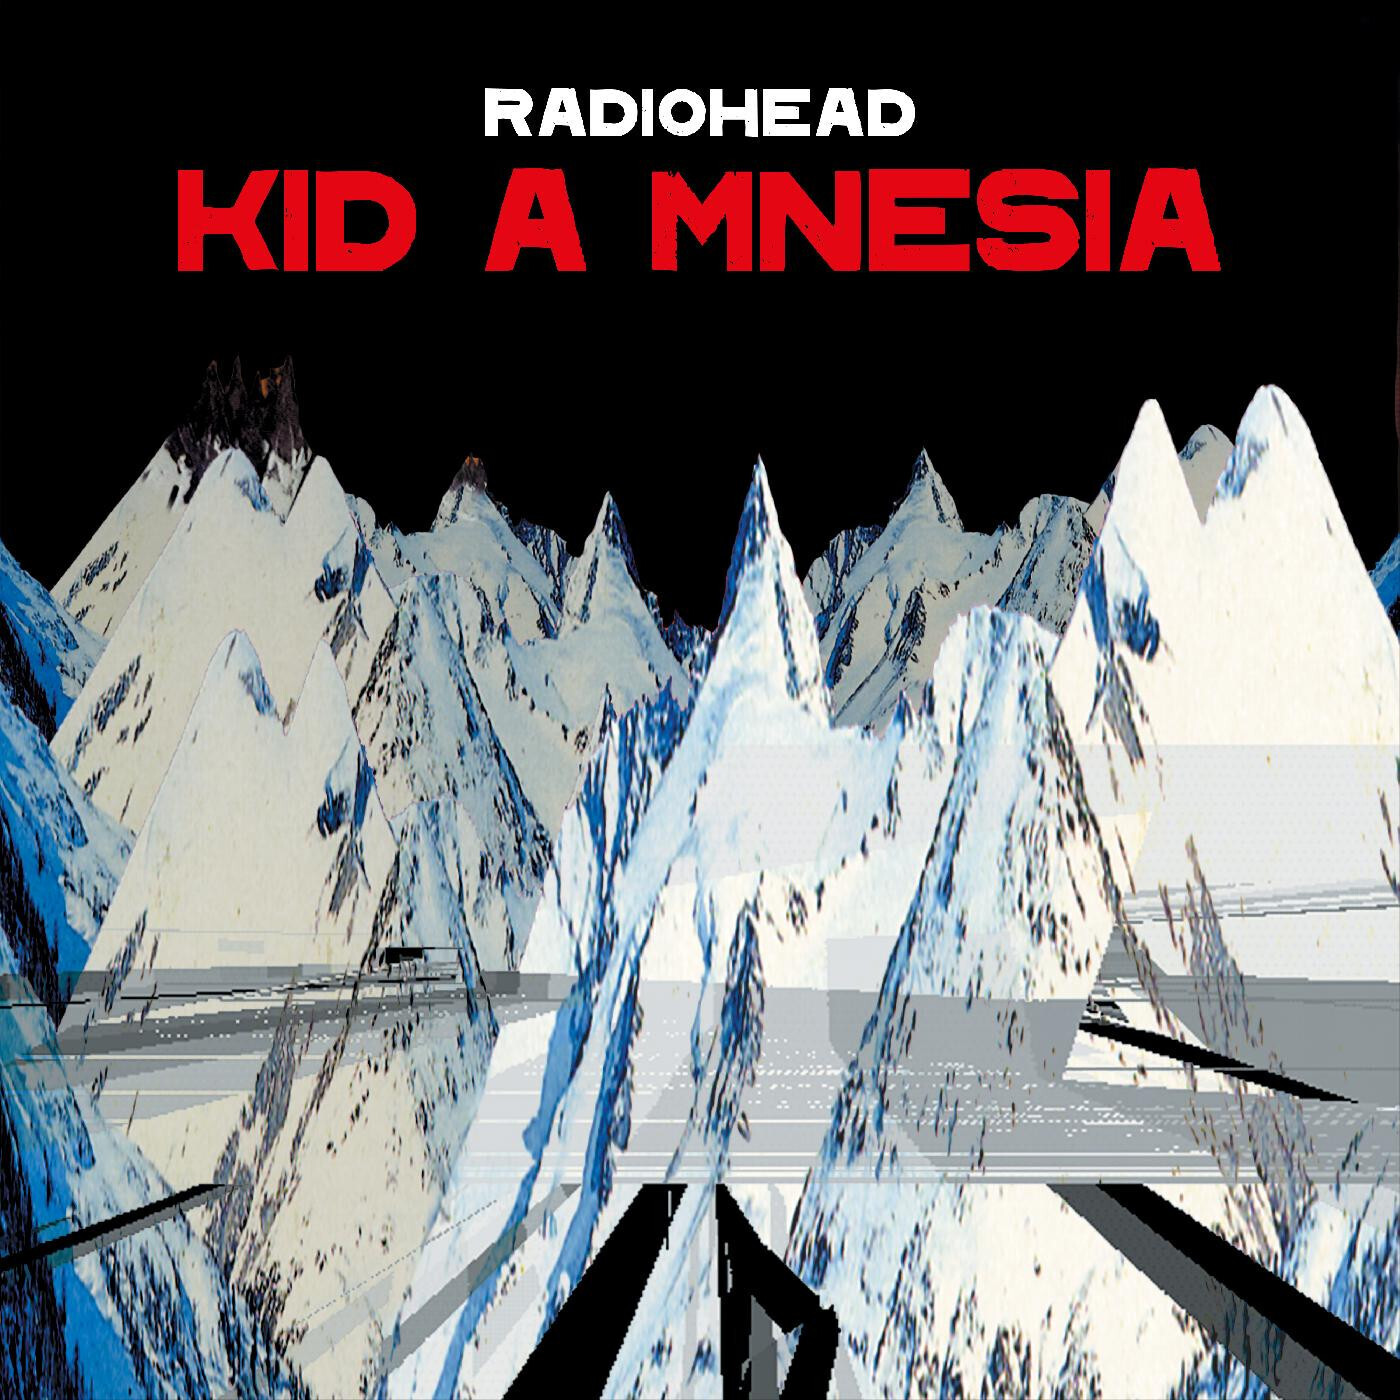 Radiohead "Kid A Mnesia" 